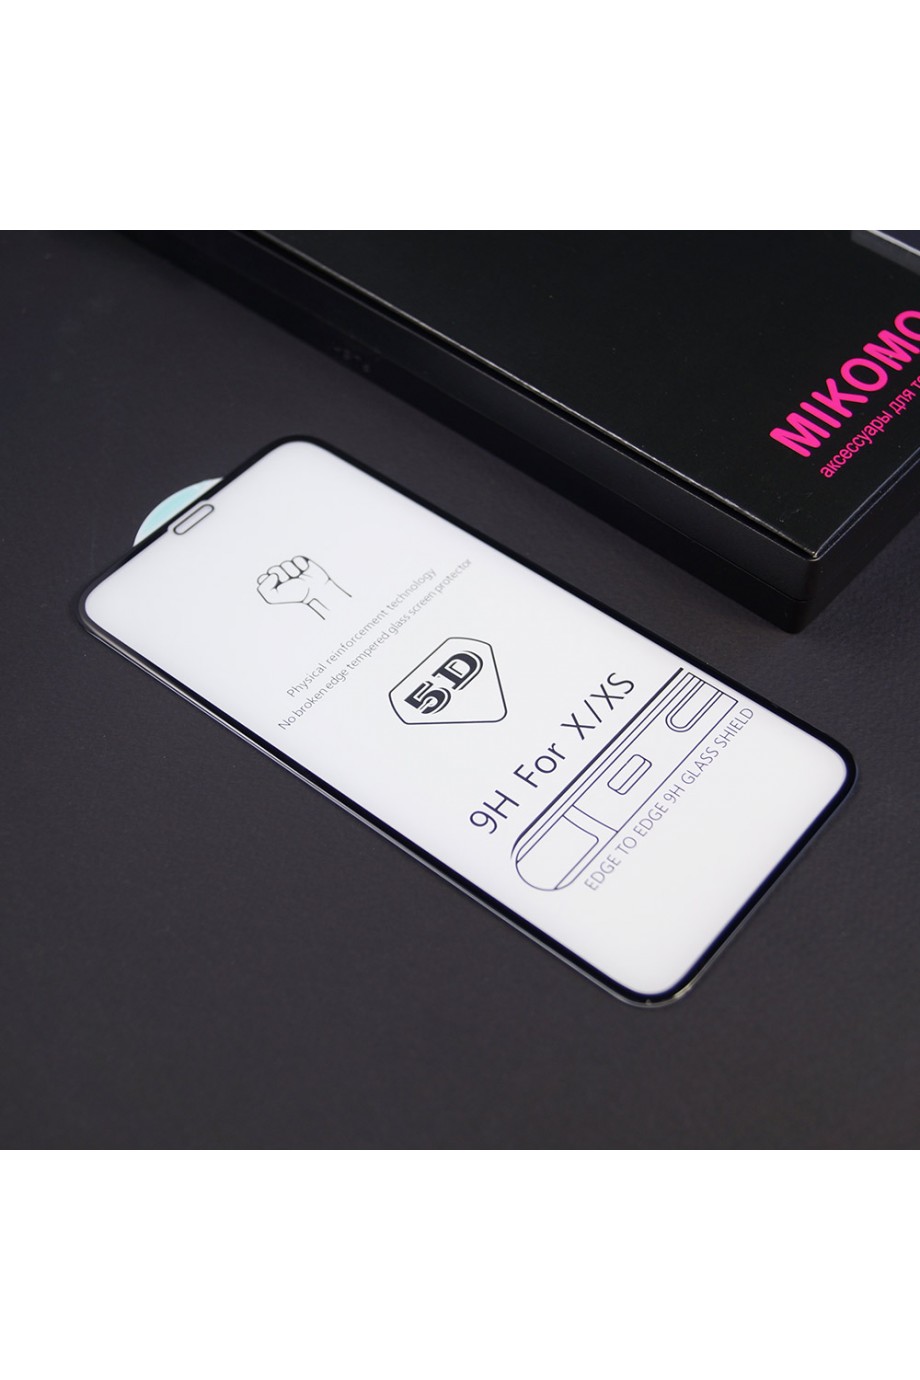 Защитное стекло 5D Mikomo для iPhone X, черная рамка, полный клей